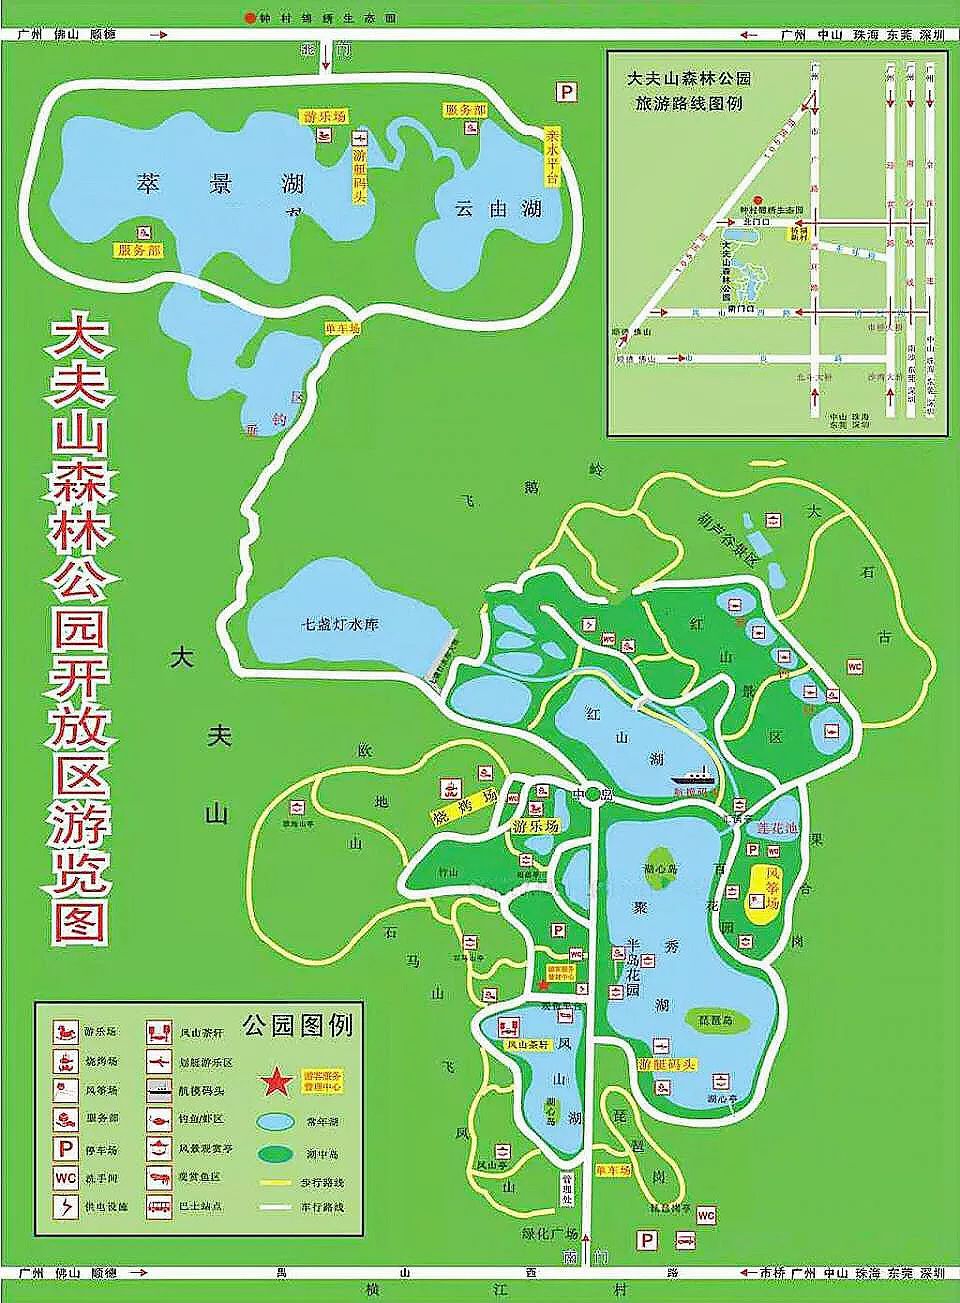 广州公园地图大全收藏这一篇就不怕荡失路了